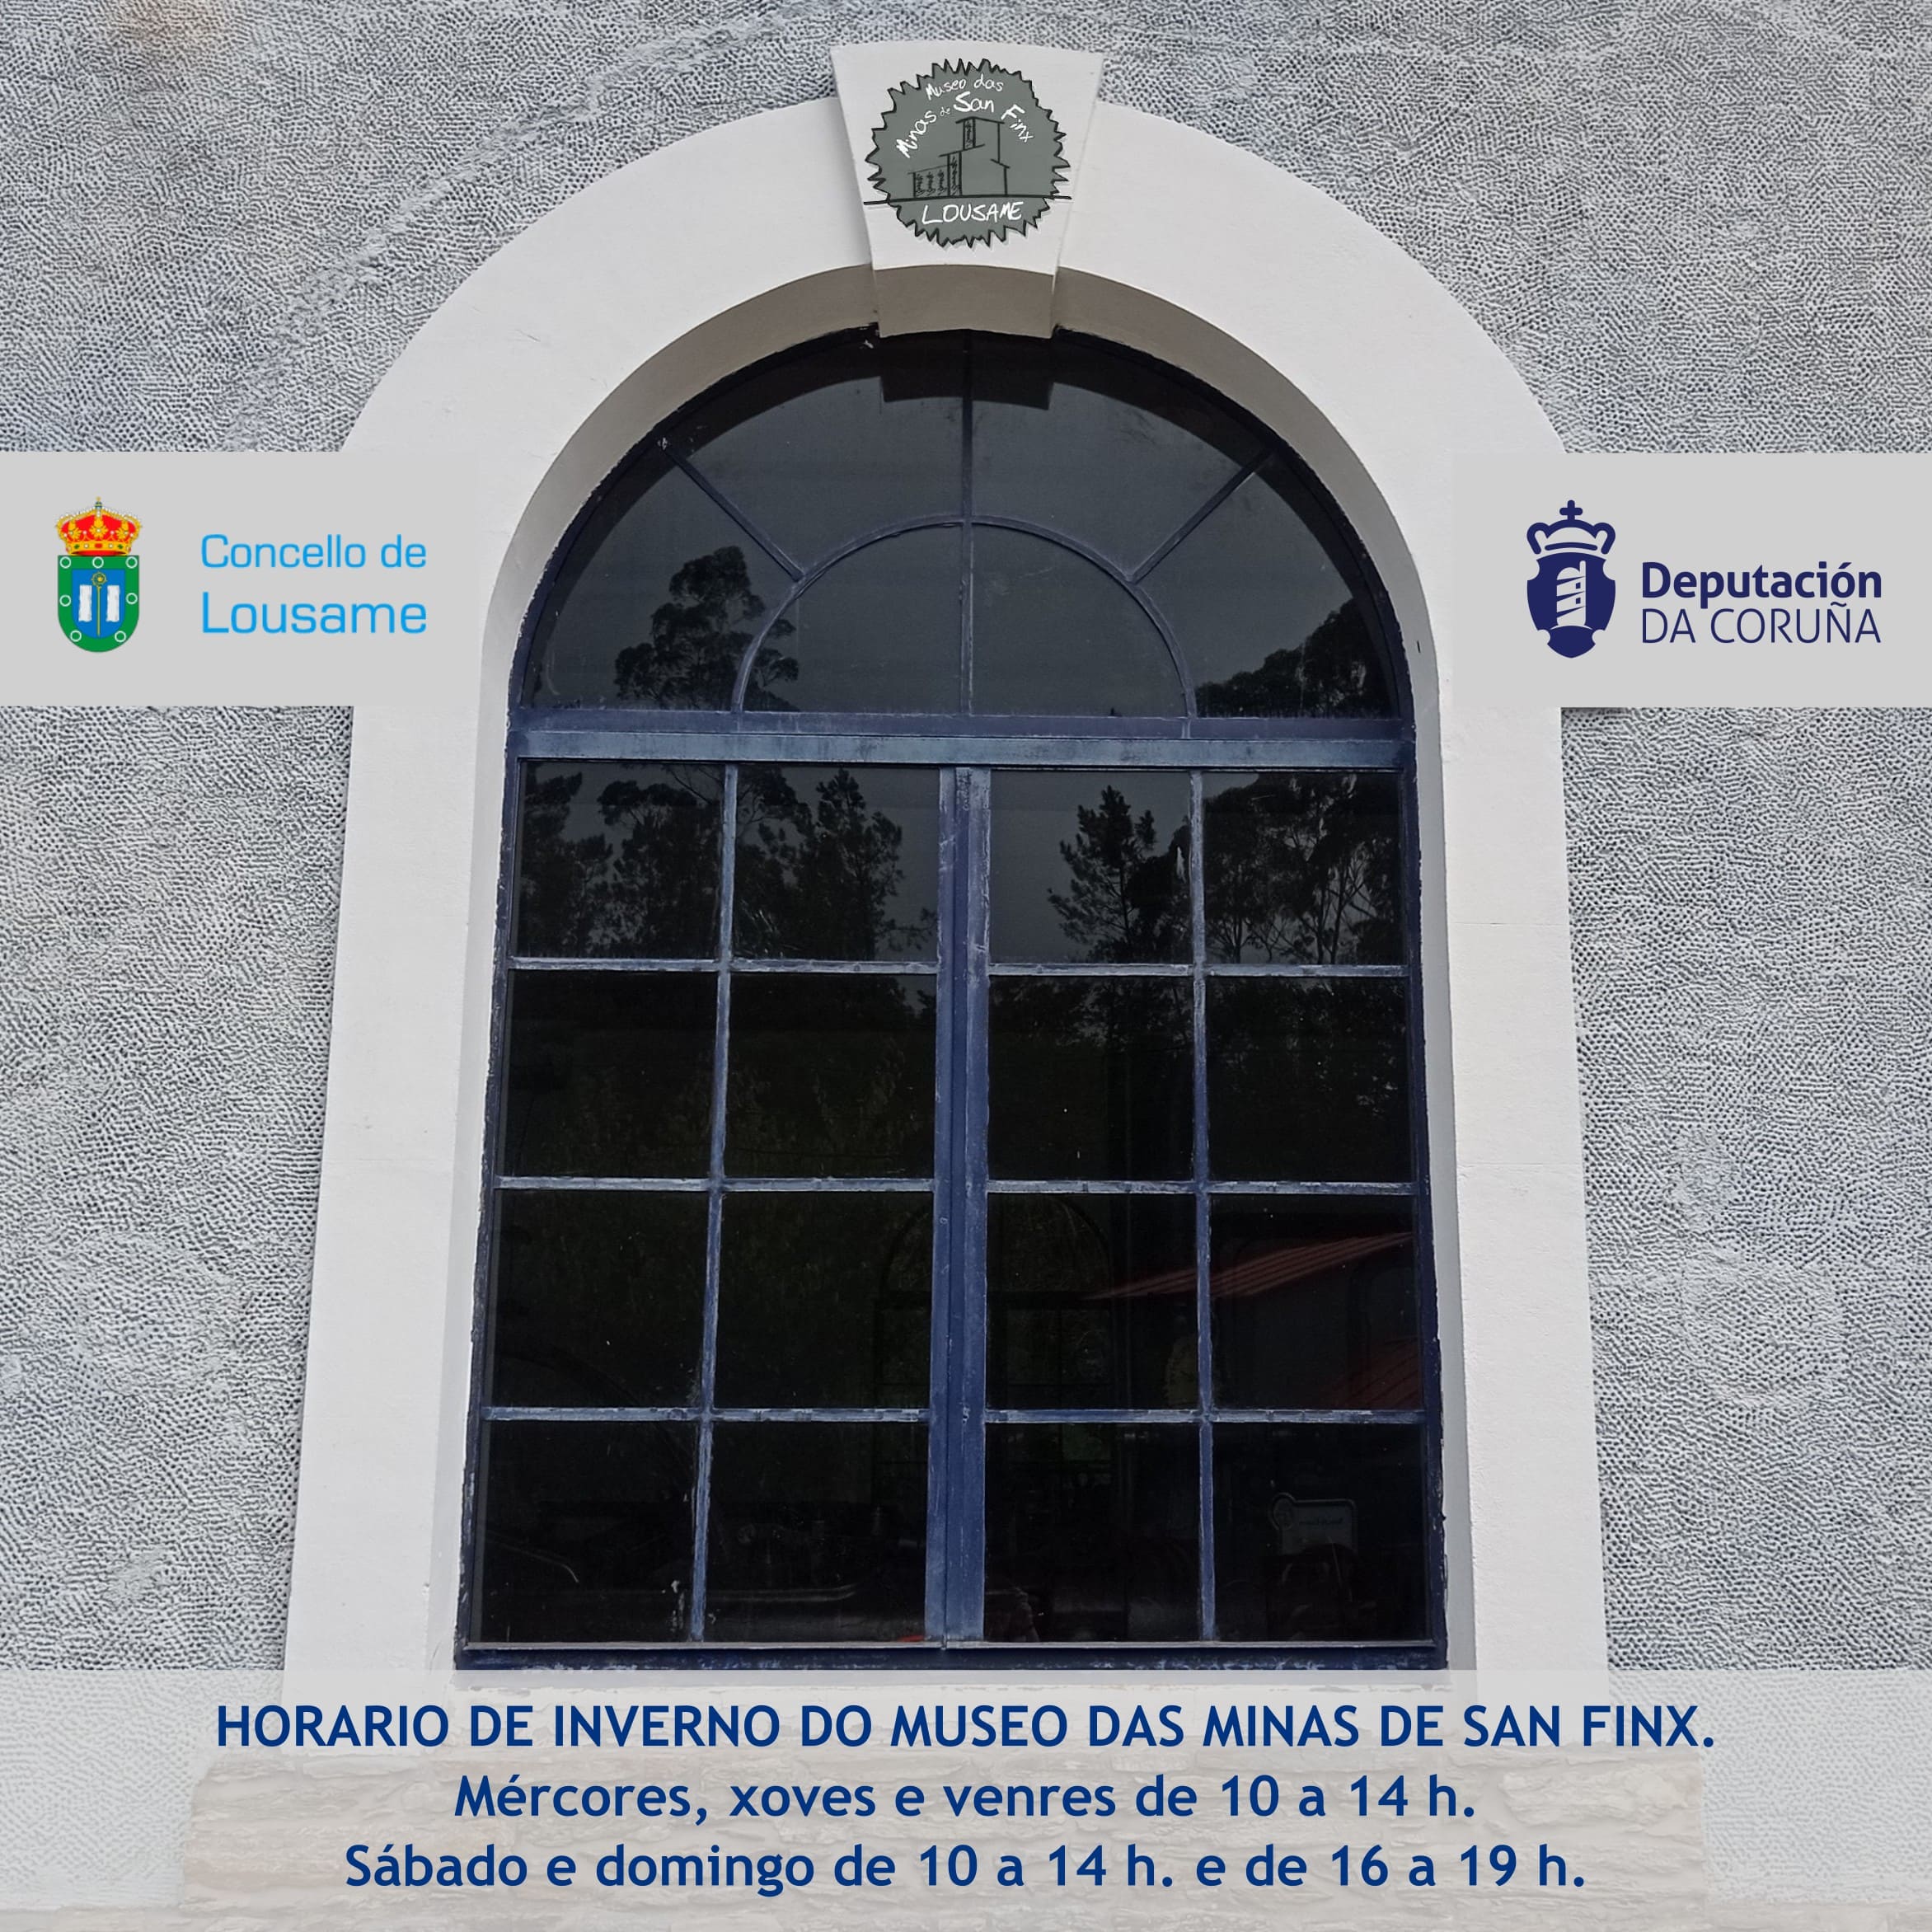 O Museo das Minas de San Finx estrea o seu novo horario de inverno